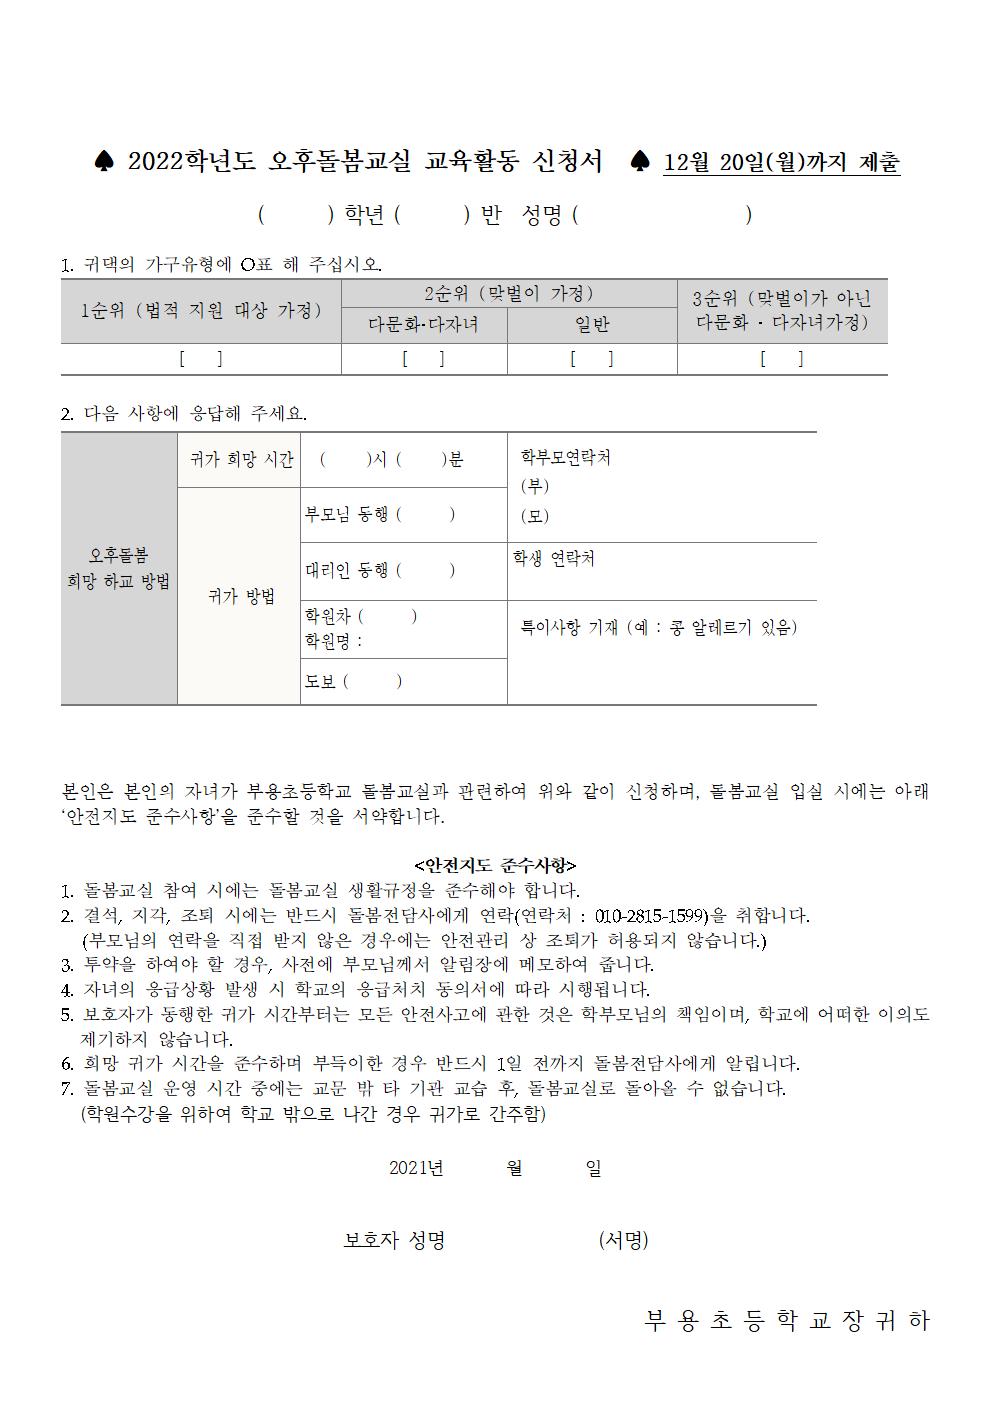 (붙임1)2022. 신학기 돌봄교실 수요조사 안내장(재학생용)002